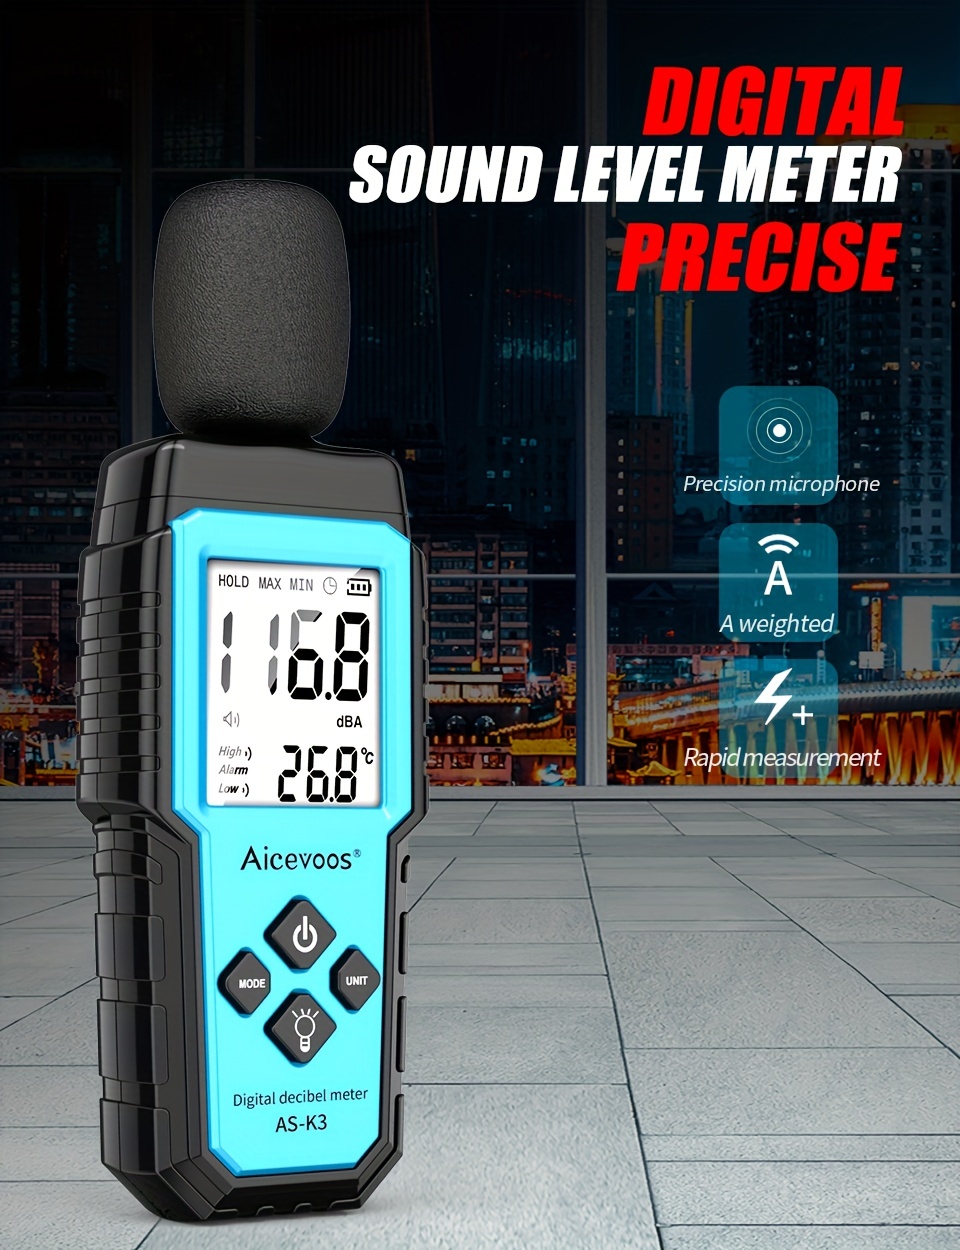 Sonomètres - Mesure du niveau sonore en décibel